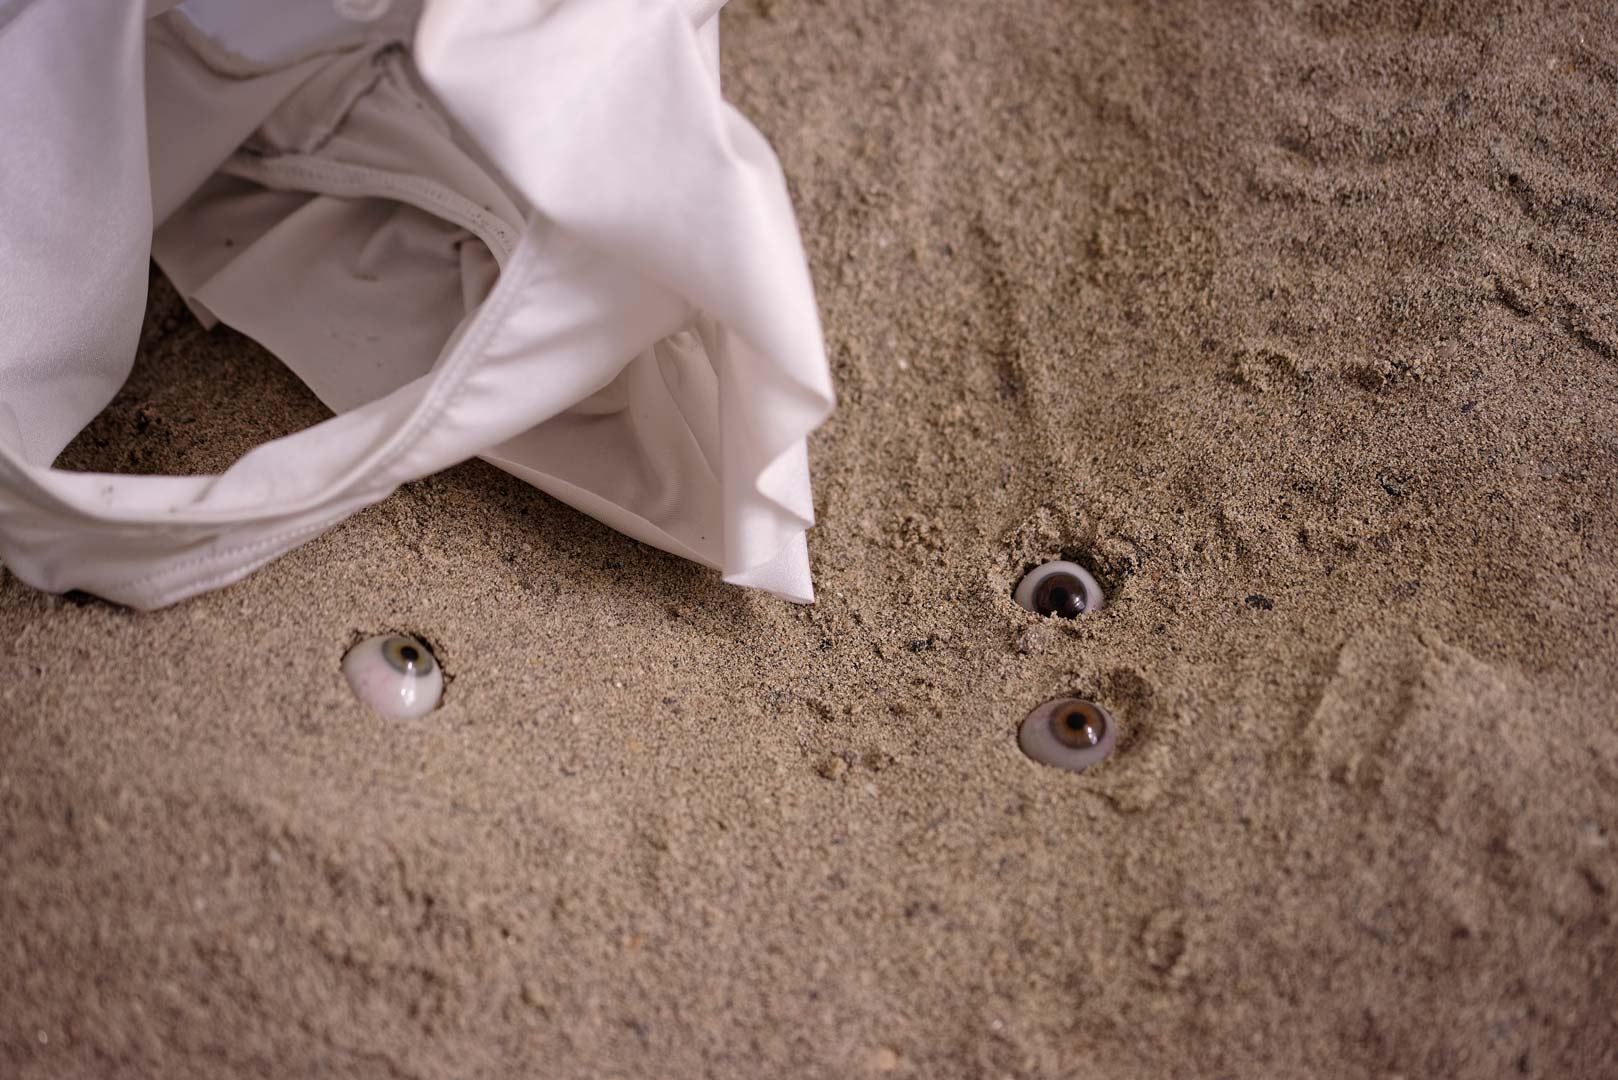 Vue de l'installation intitulée " Les tombeaux innocents". Focus resserré sur le sable. Des yeux de verre de différentes couleurs hésitent entre surgissement et enlisement. Ils semblent regarder dans différentes direction. A gauche, un morceau de maillot bain semble occupé mais pourtant vide.